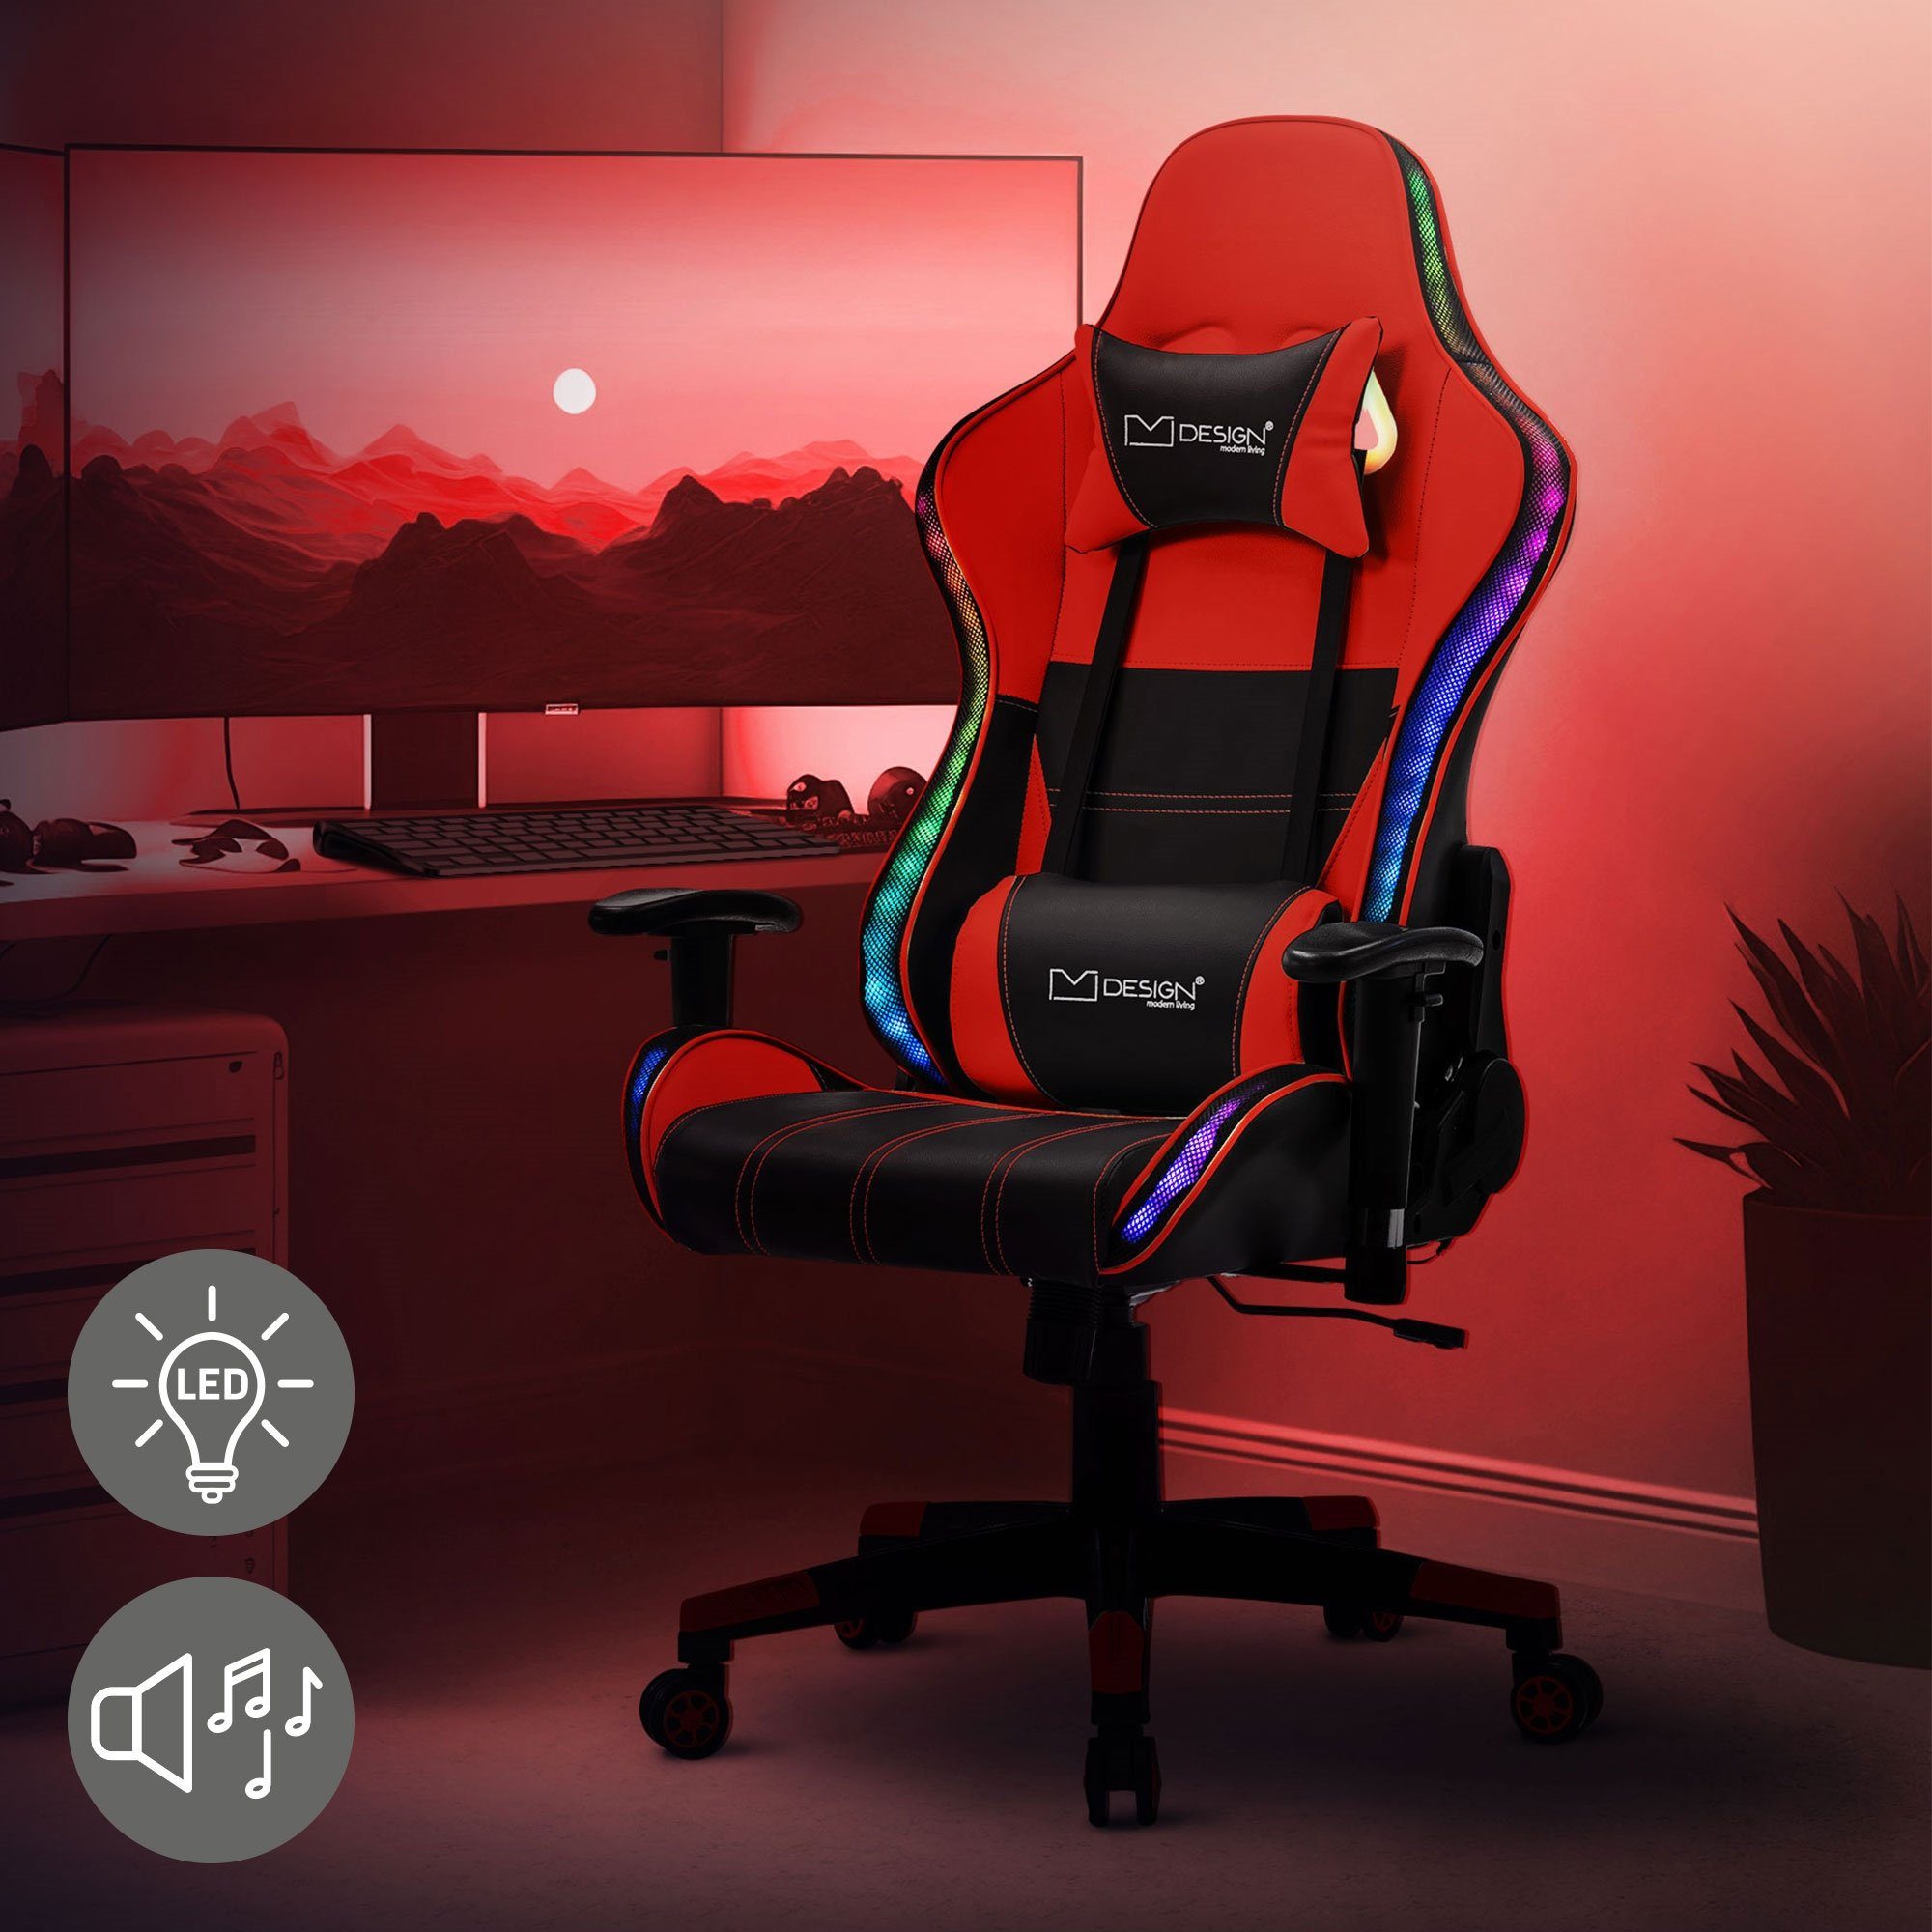 ML-DESIGN Gaming-Stuhl Schreibtischstuhl mit RGB LED-Beleuchtung & Bluetooth-Lautsprechern, Bürostuhl Schwarz-Rot aus Kunstleder Rückenlehne Kopfstütze